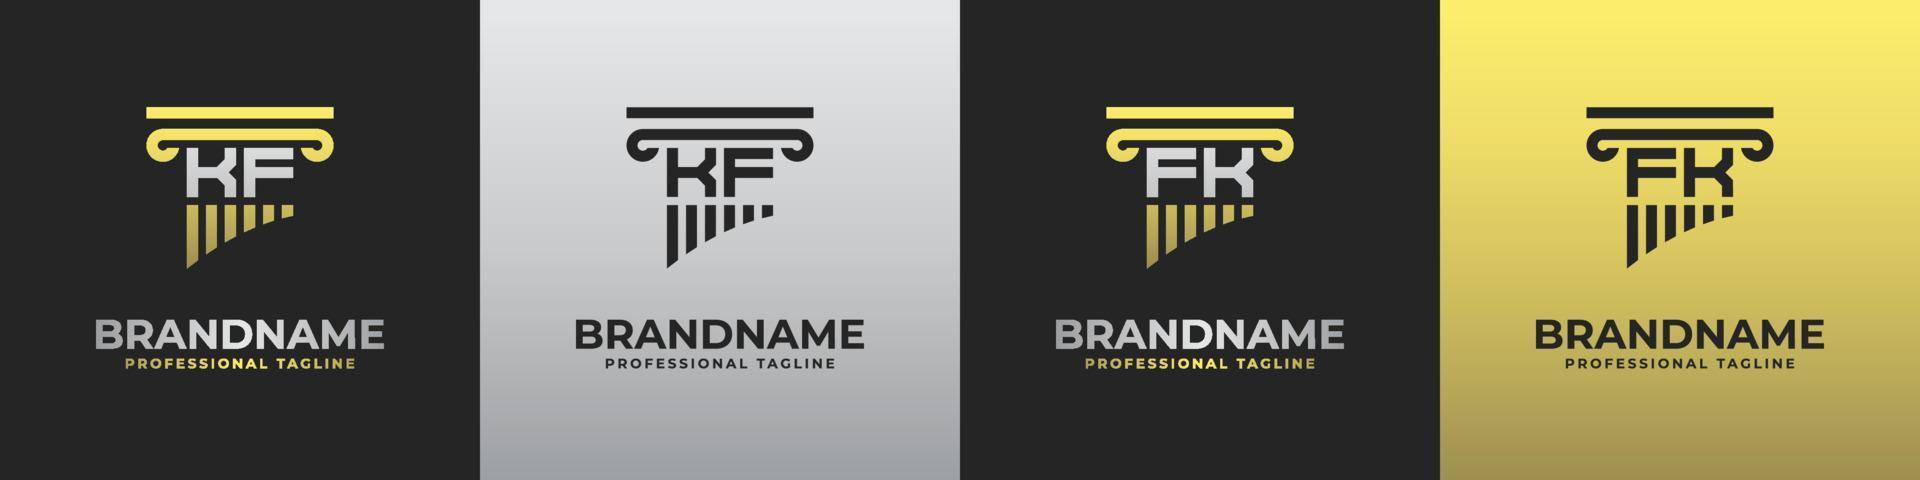 brev fk eller K F advokat logotyp, lämplig för några företag relaterad till advokat med fk eller K F initialer. vektor